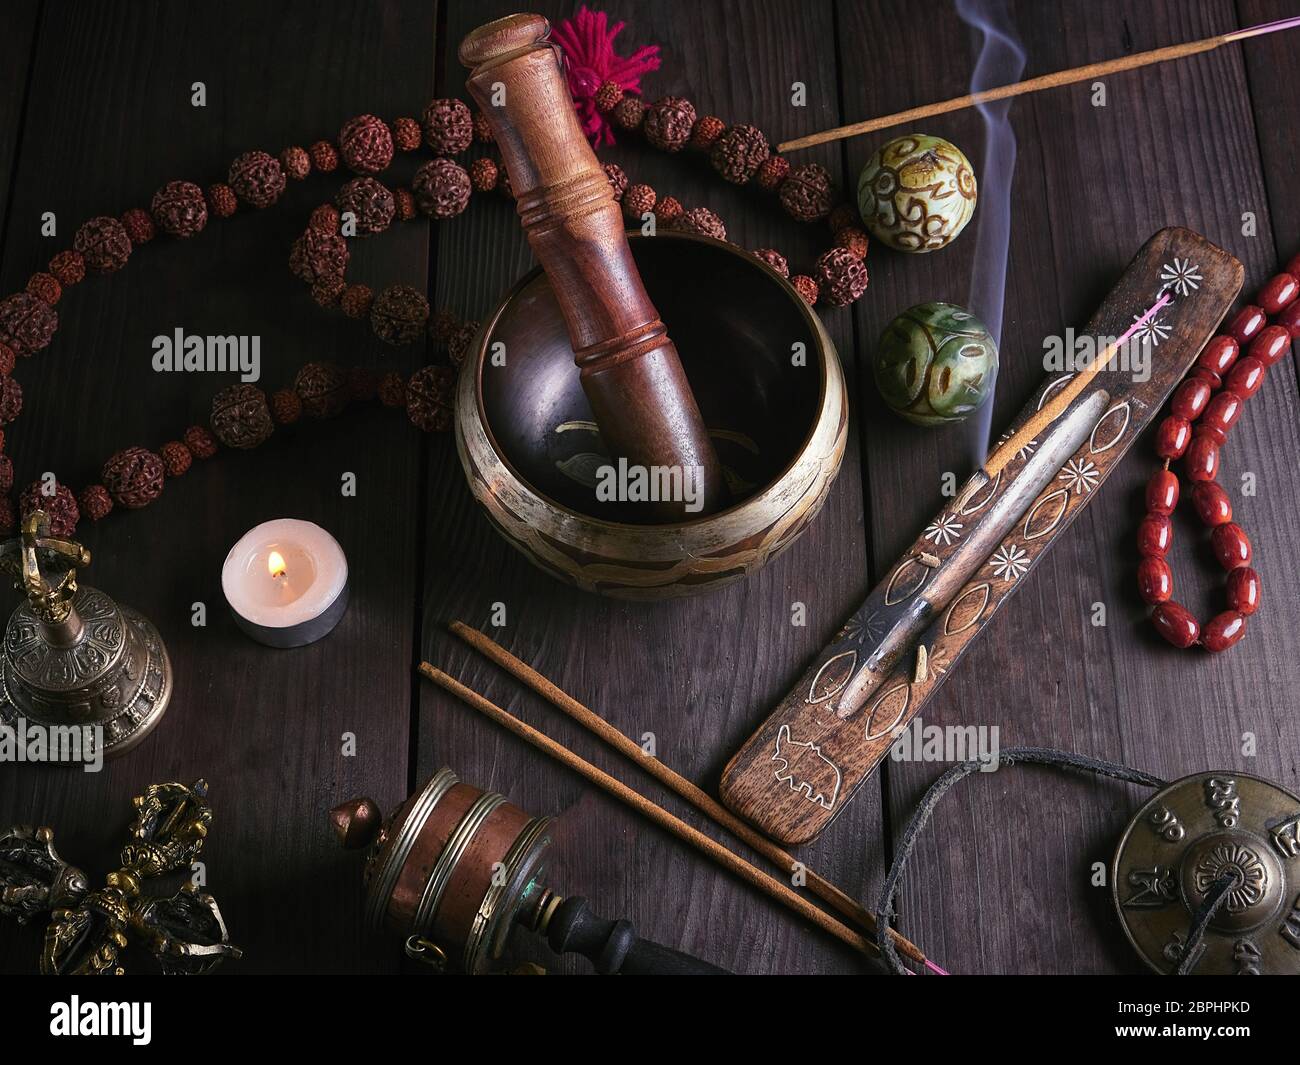 Canto de cobre bowl, el rosario, la oración de tambor, bolas de piedra y  otros objetos religiosos tibetanos para la meditación y la medicina  alternativa sobre una plancha de madera ba Fotografía